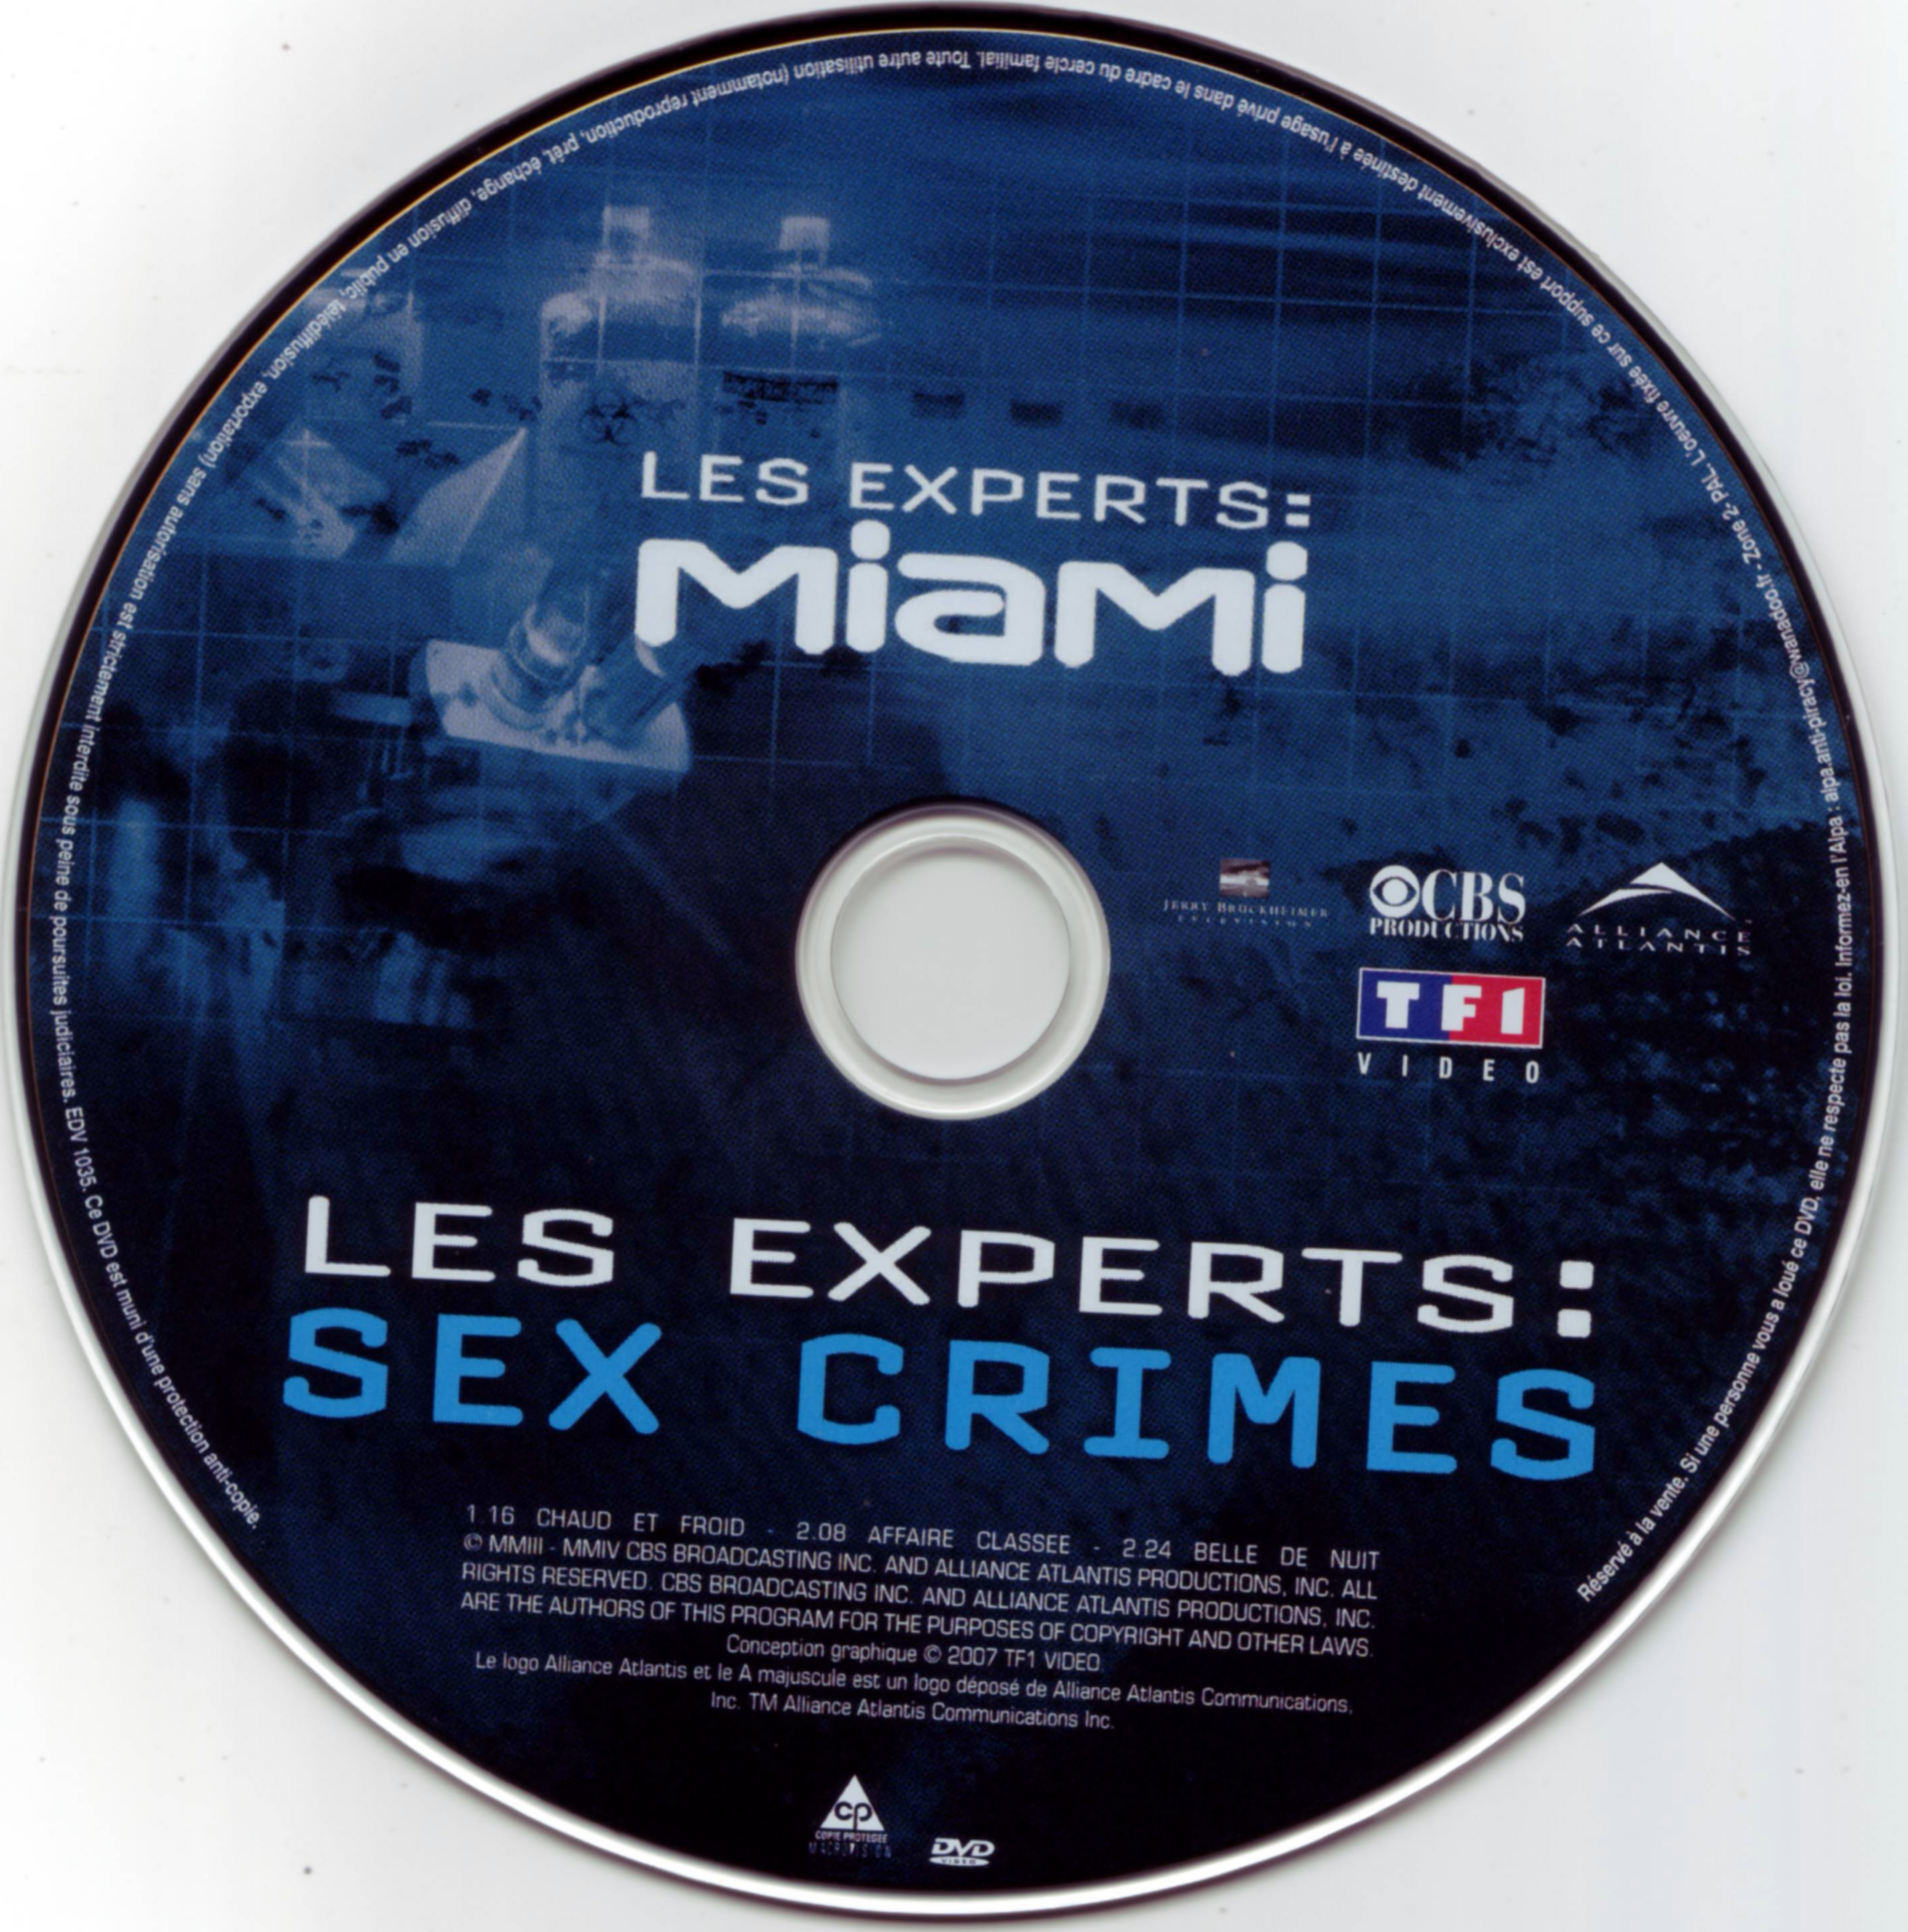 Les experts - Sex crimes - Miami